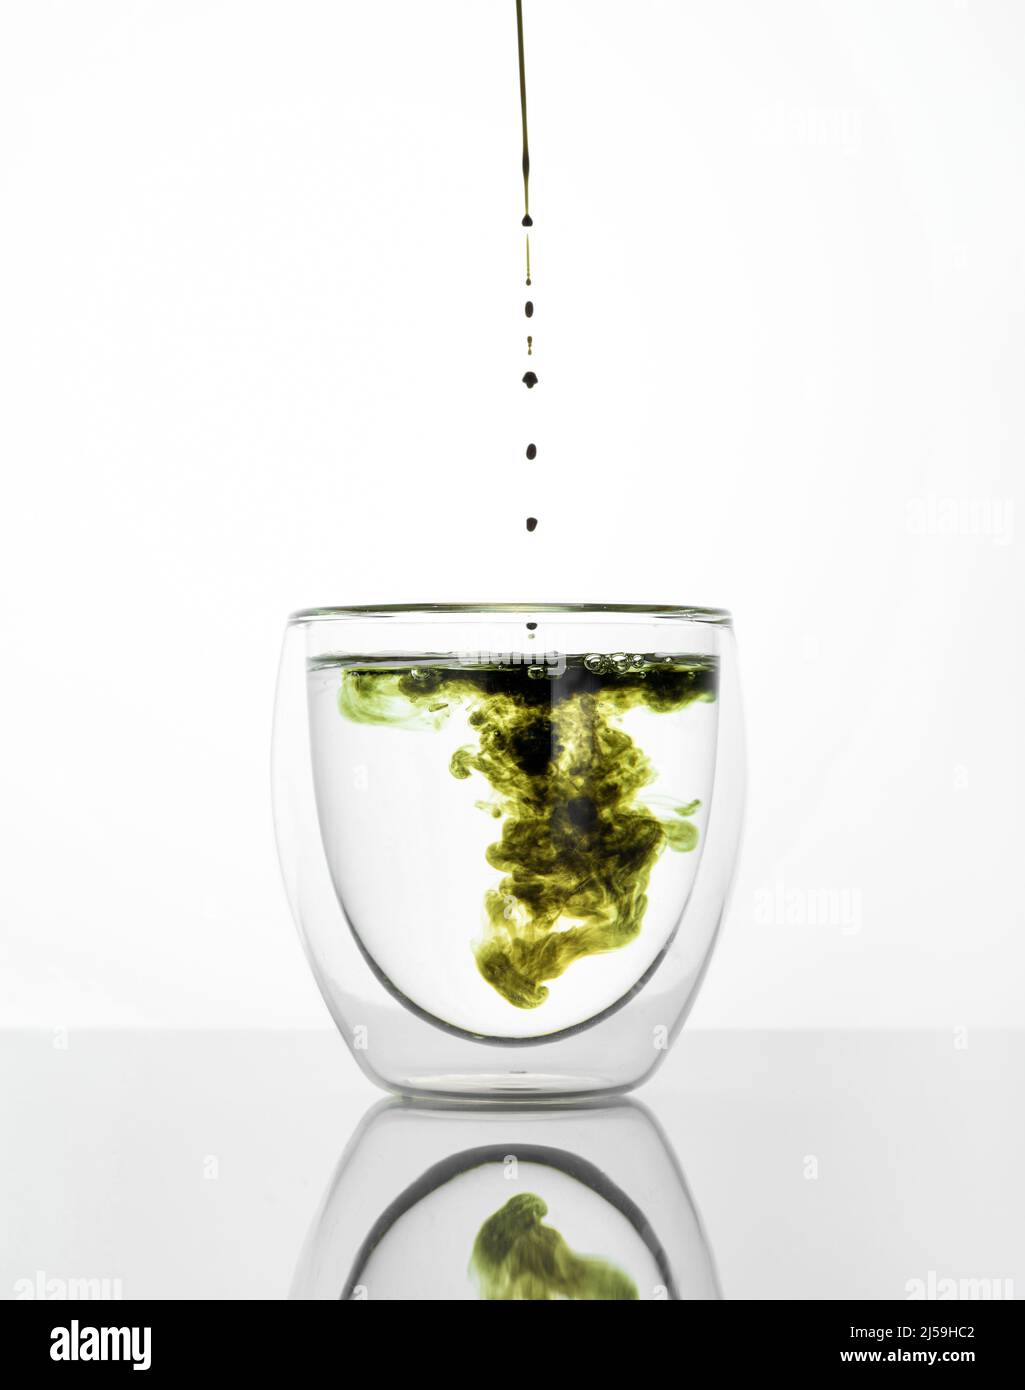 Glas Wasser mit Chlorophyll-Extrakt vor weißgrauem Hintergrund. Flüssiges Chlorophyll in ein Glas Wasser gießen. Konzept von Superfood, Gesundheit Stockfoto